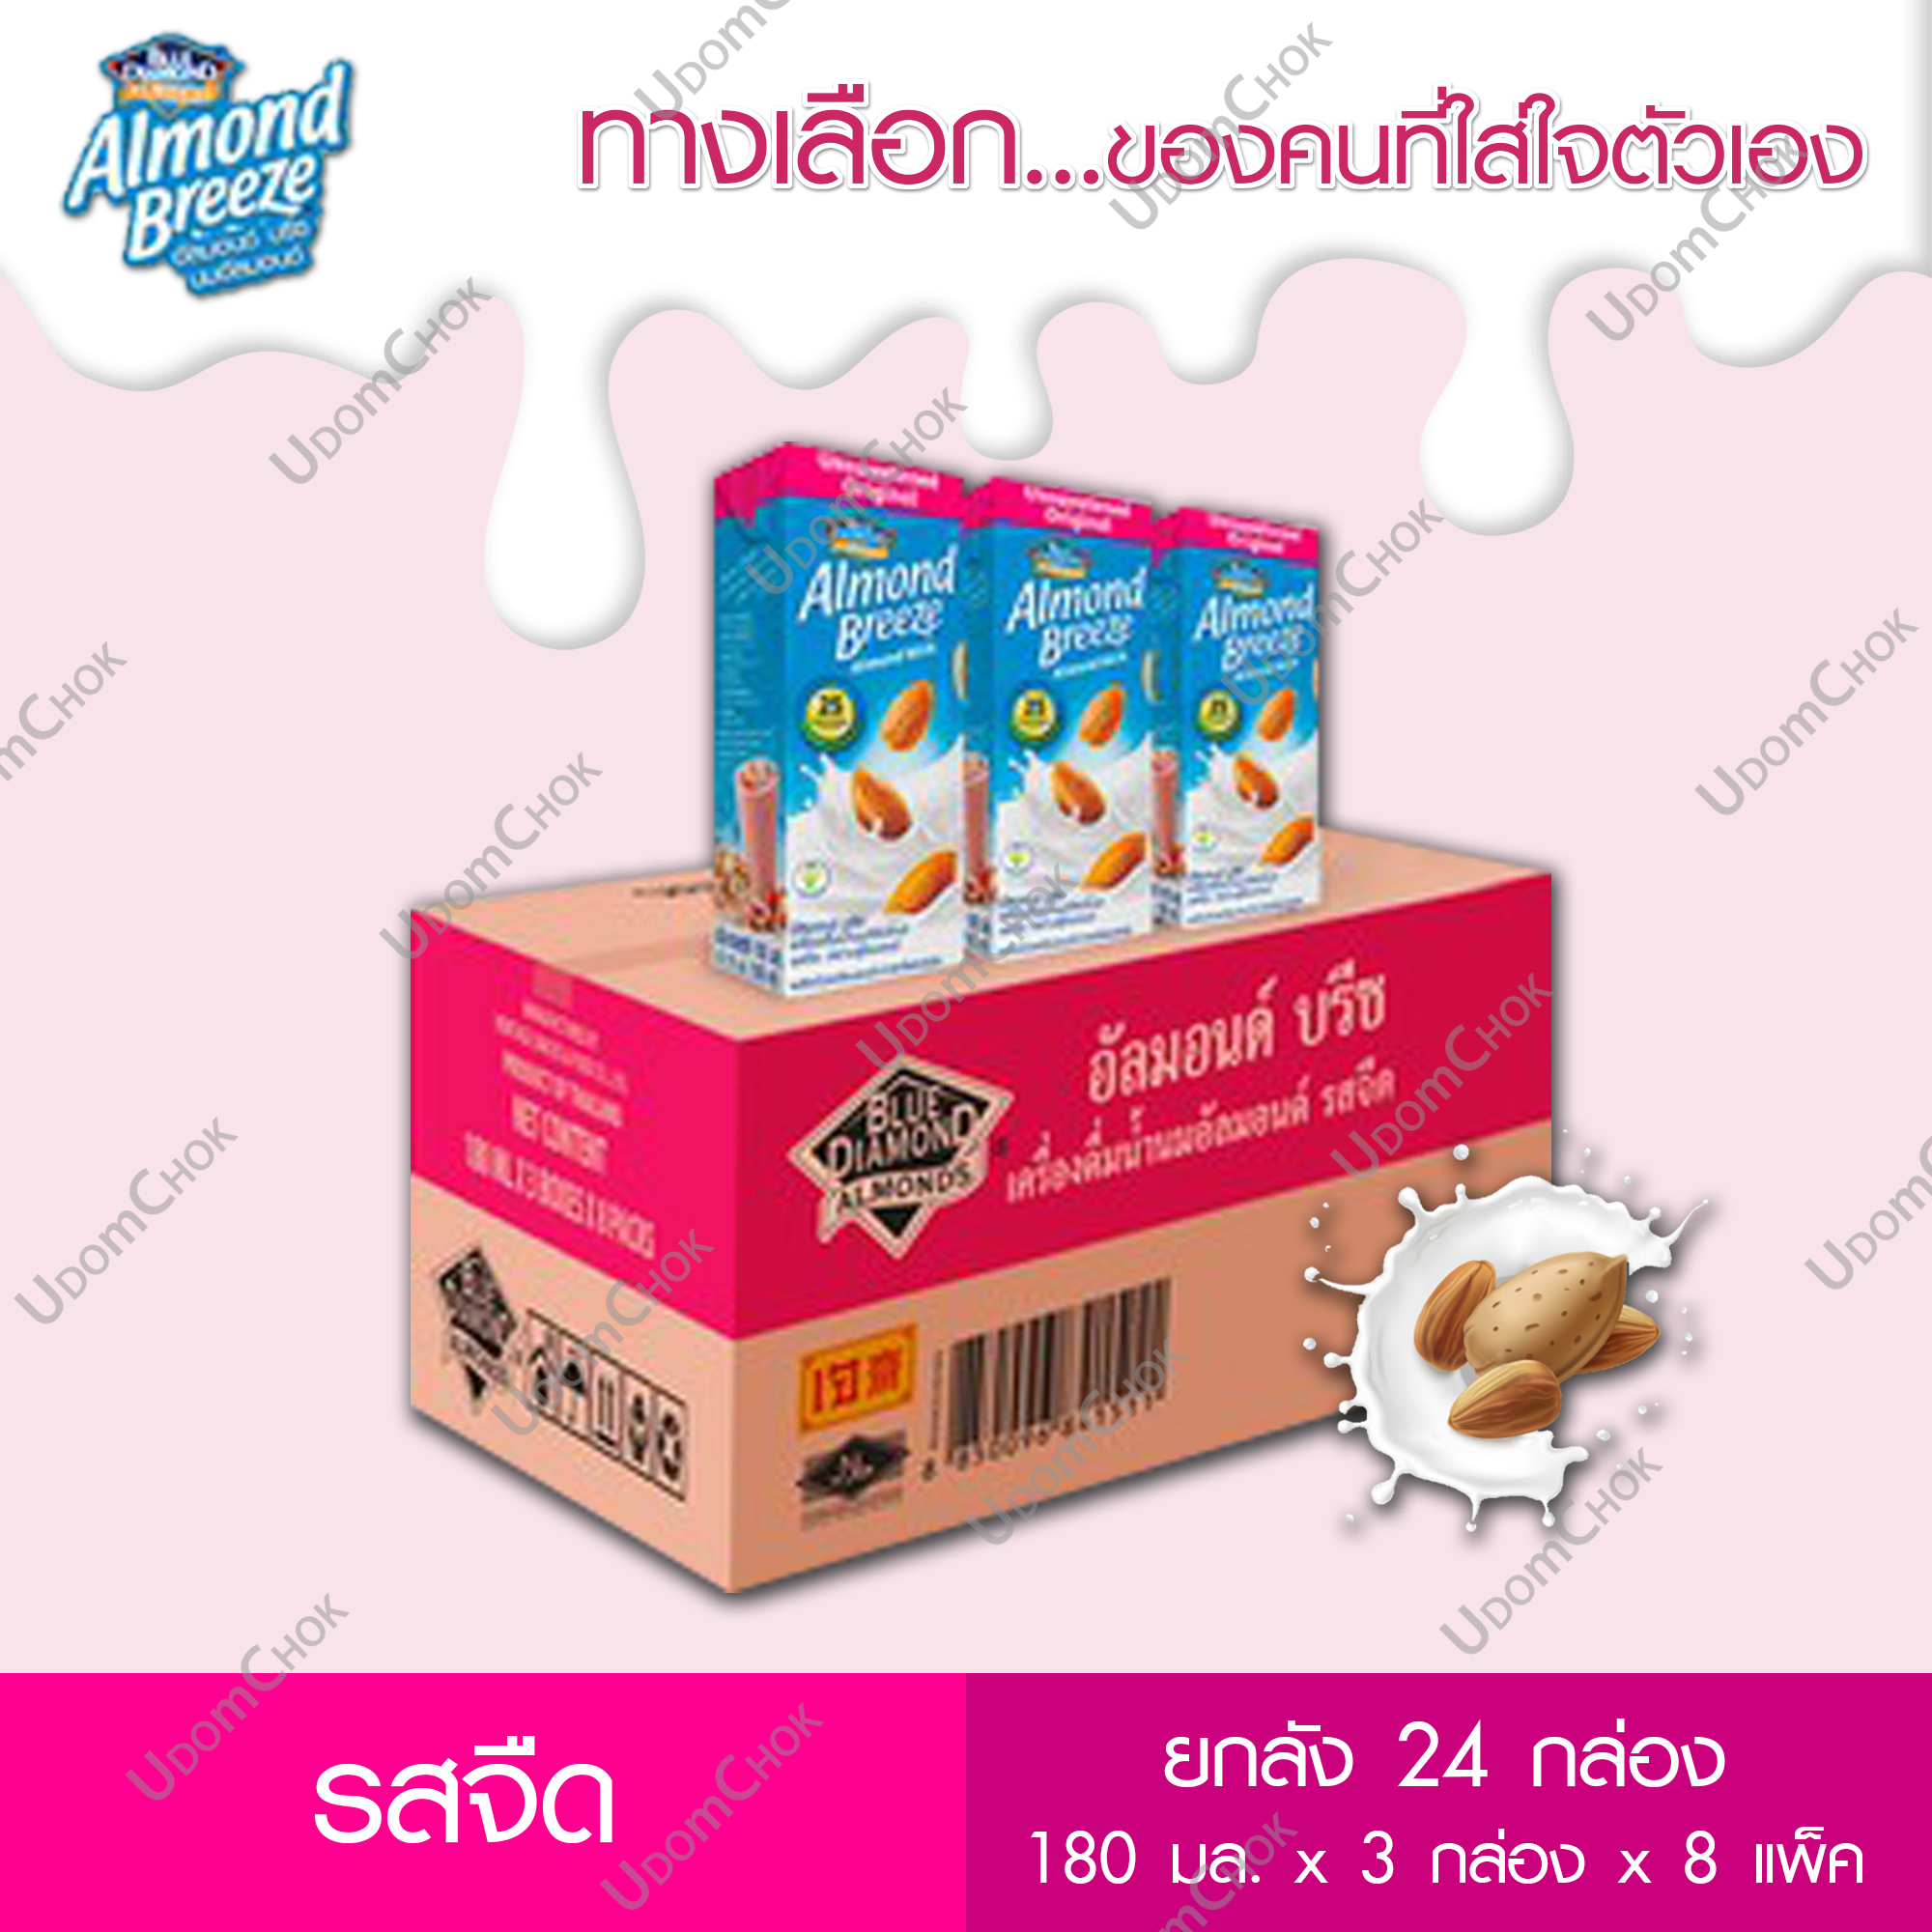 บลูไดมอนด์ อัลมอนด์ บรีซ น้ำนมอัลมอนด์ รสจืด ขนาด 180 มล. x 3 กล่อง x 8 แพ็ค (ยกลัง) / แคลอรี่ต่ำ / Blue Diamond Unsweetened Almond Milk 180 ml. x 3 boxes x 8 packs (Carton sales)